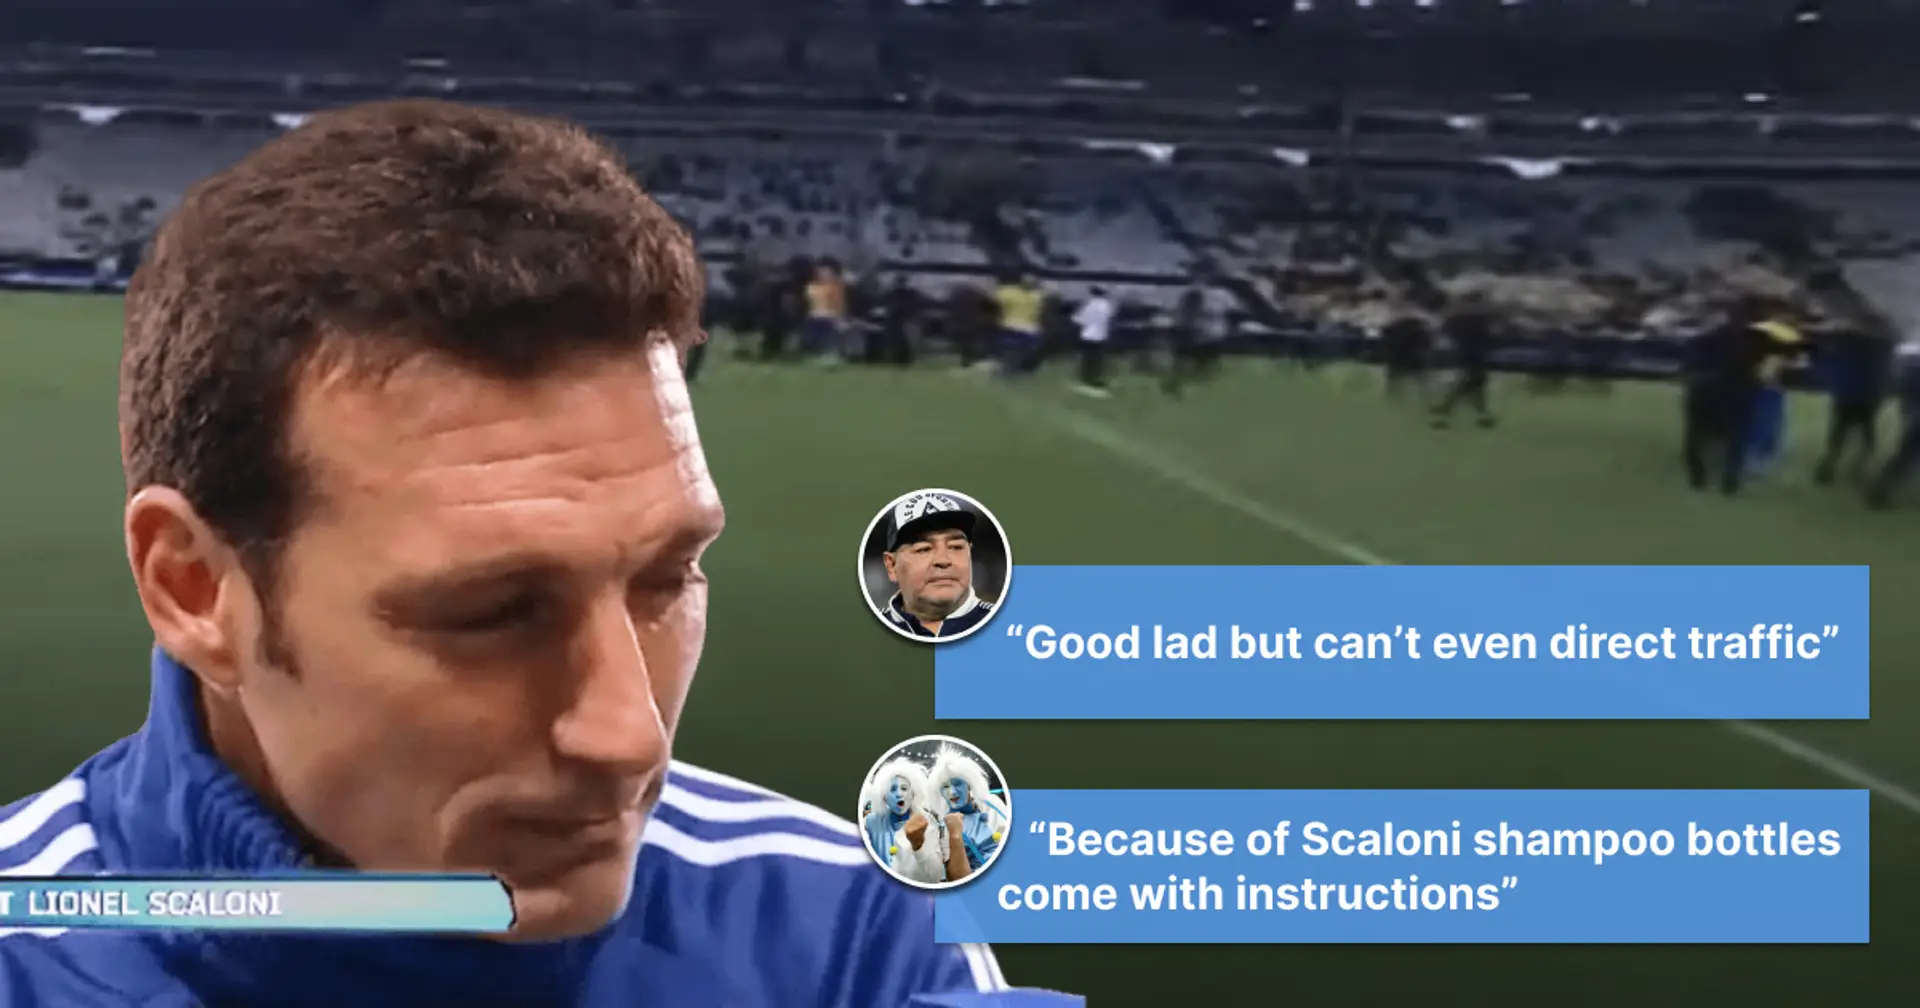 "Notre entraîneur est un idiot confirmé": voici ce que les supporters argentins ont dit après les premiers matchs de Lionel Scaloni